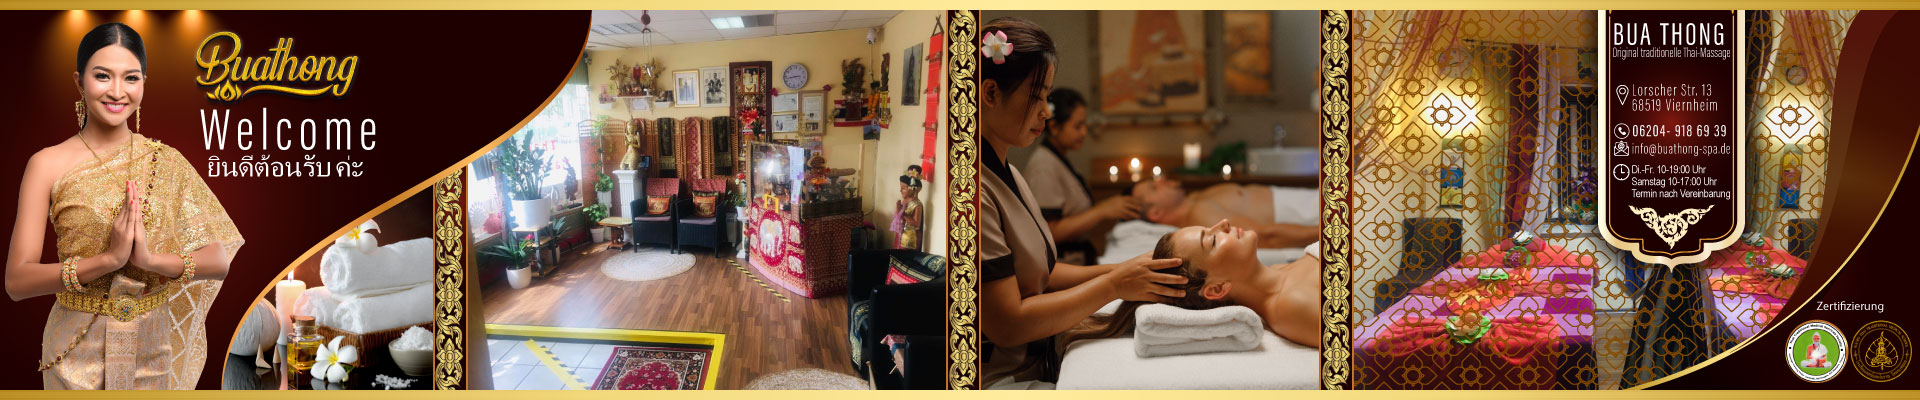 Bua Thong Original traditionelle Thai-Massage in Viernheim